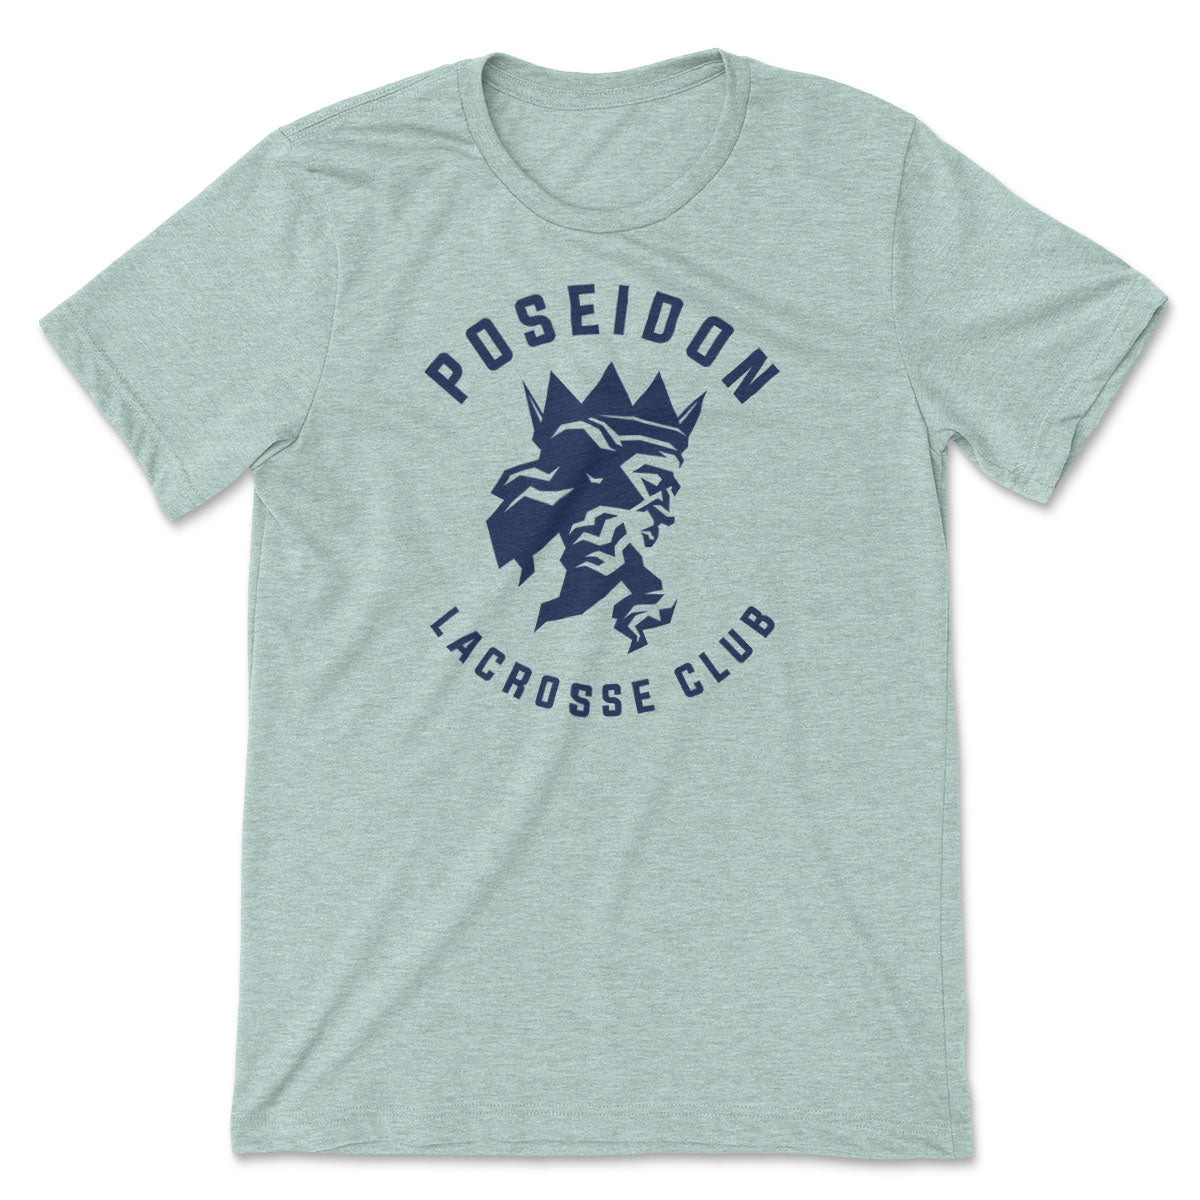 Poseidon Lacrosse // Men's Tee